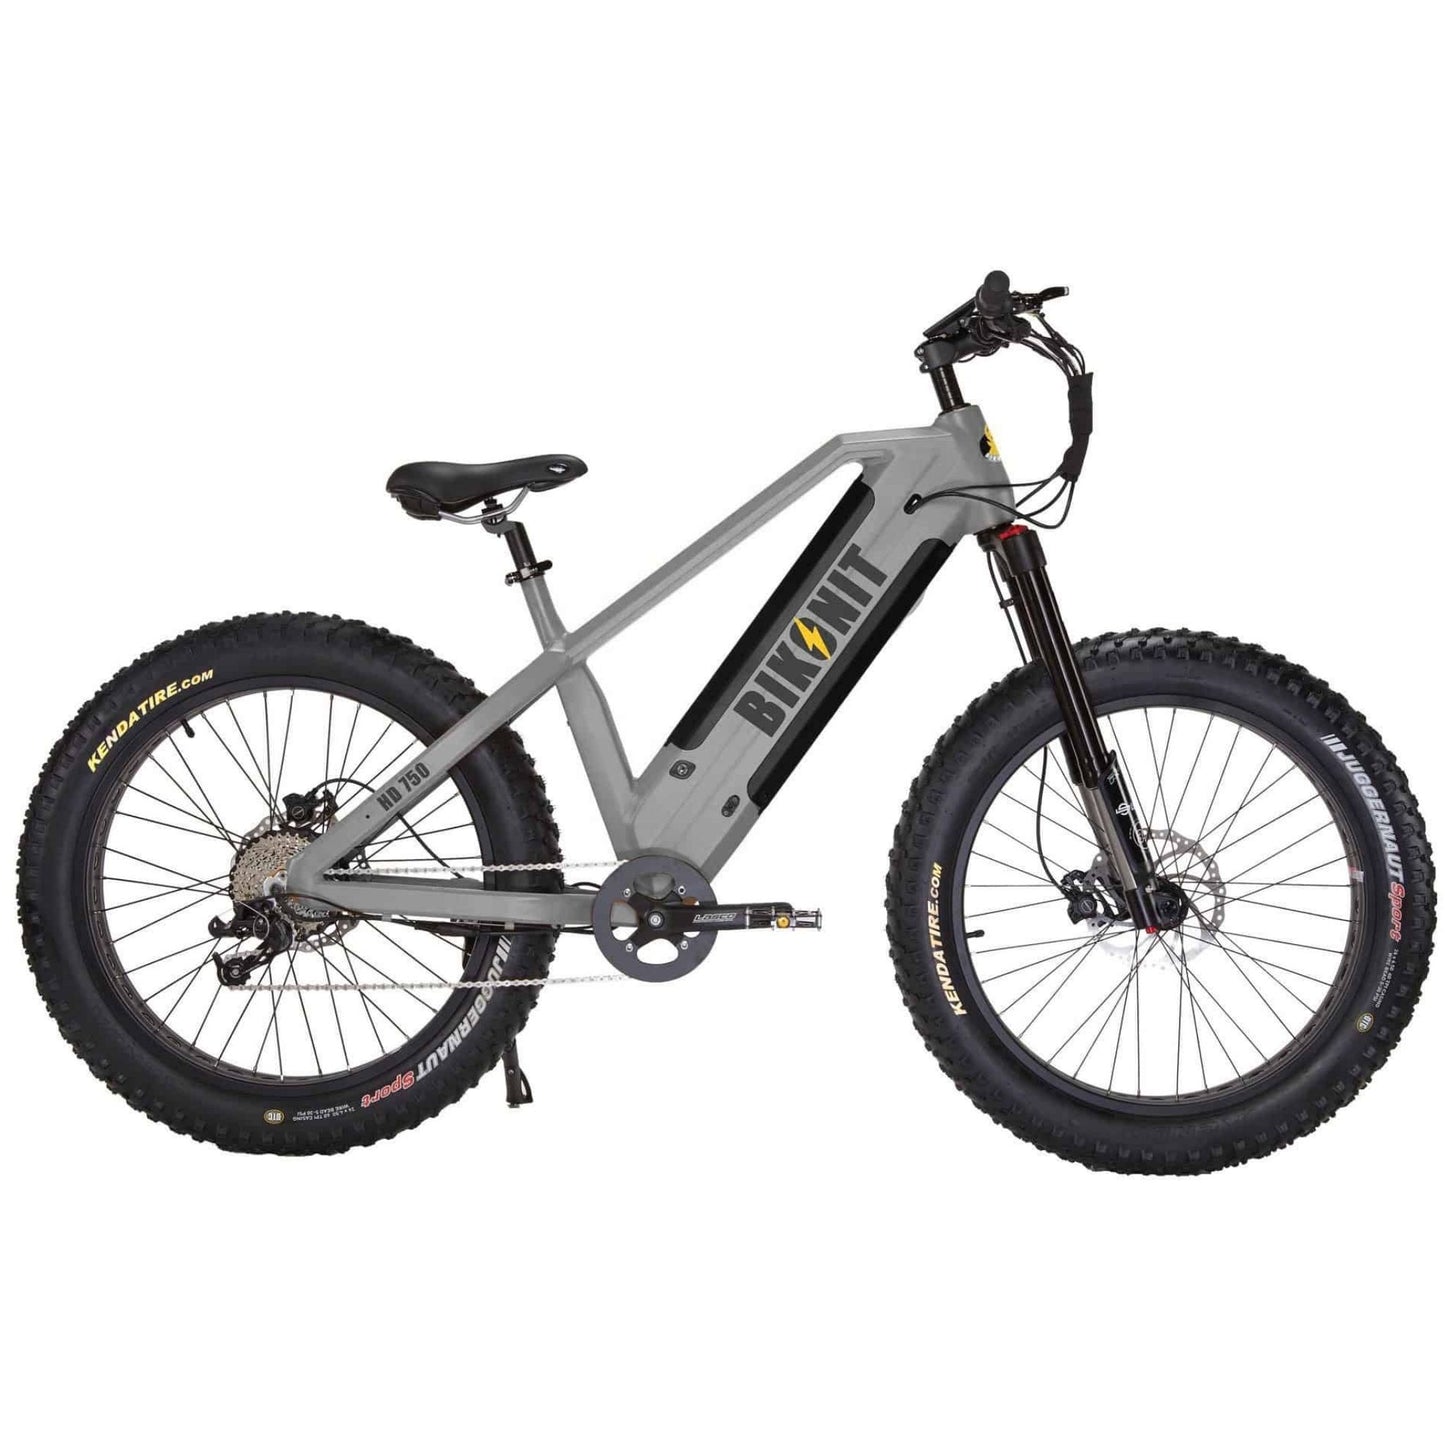 Bikonit Warthog HD 750 All-Terrain Electric Bike (Dual Battery), 48V/30Ah, 750W